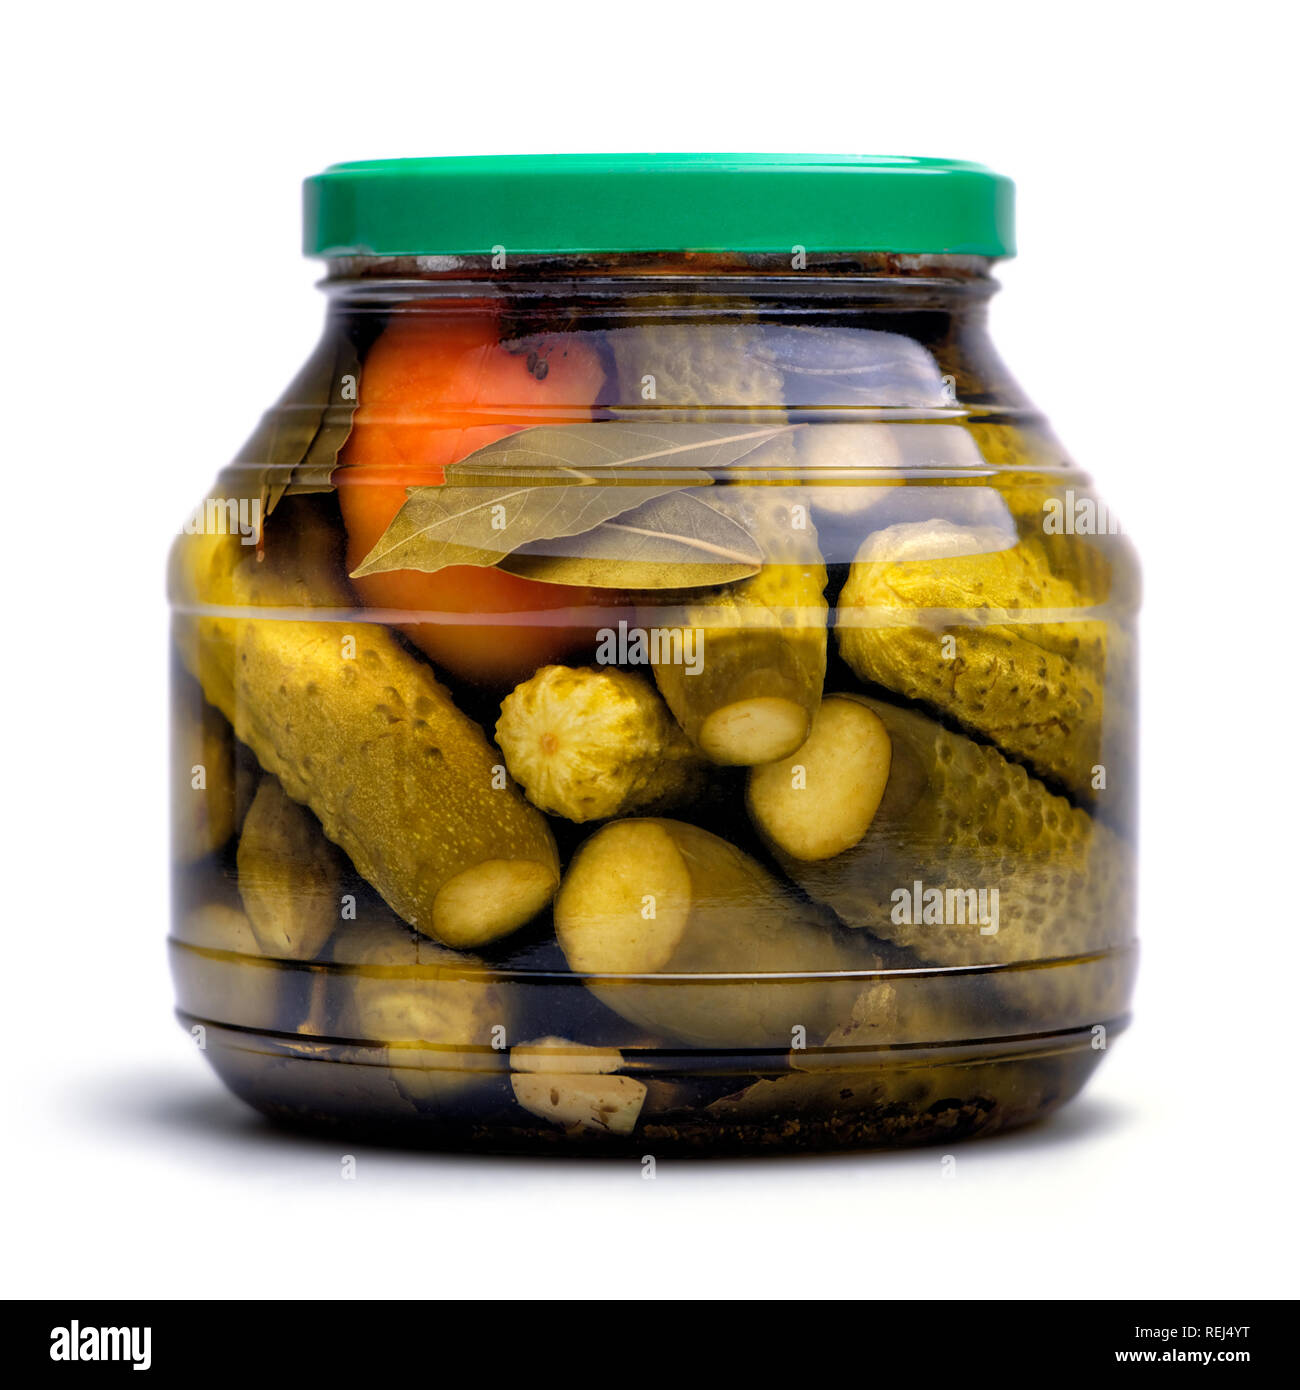 Cibo e bevande: conserve fatte in casa, cetrioli sottaceto e pomodori in un vasetto di vetro, isolati su sfondo bianco Foto Stock